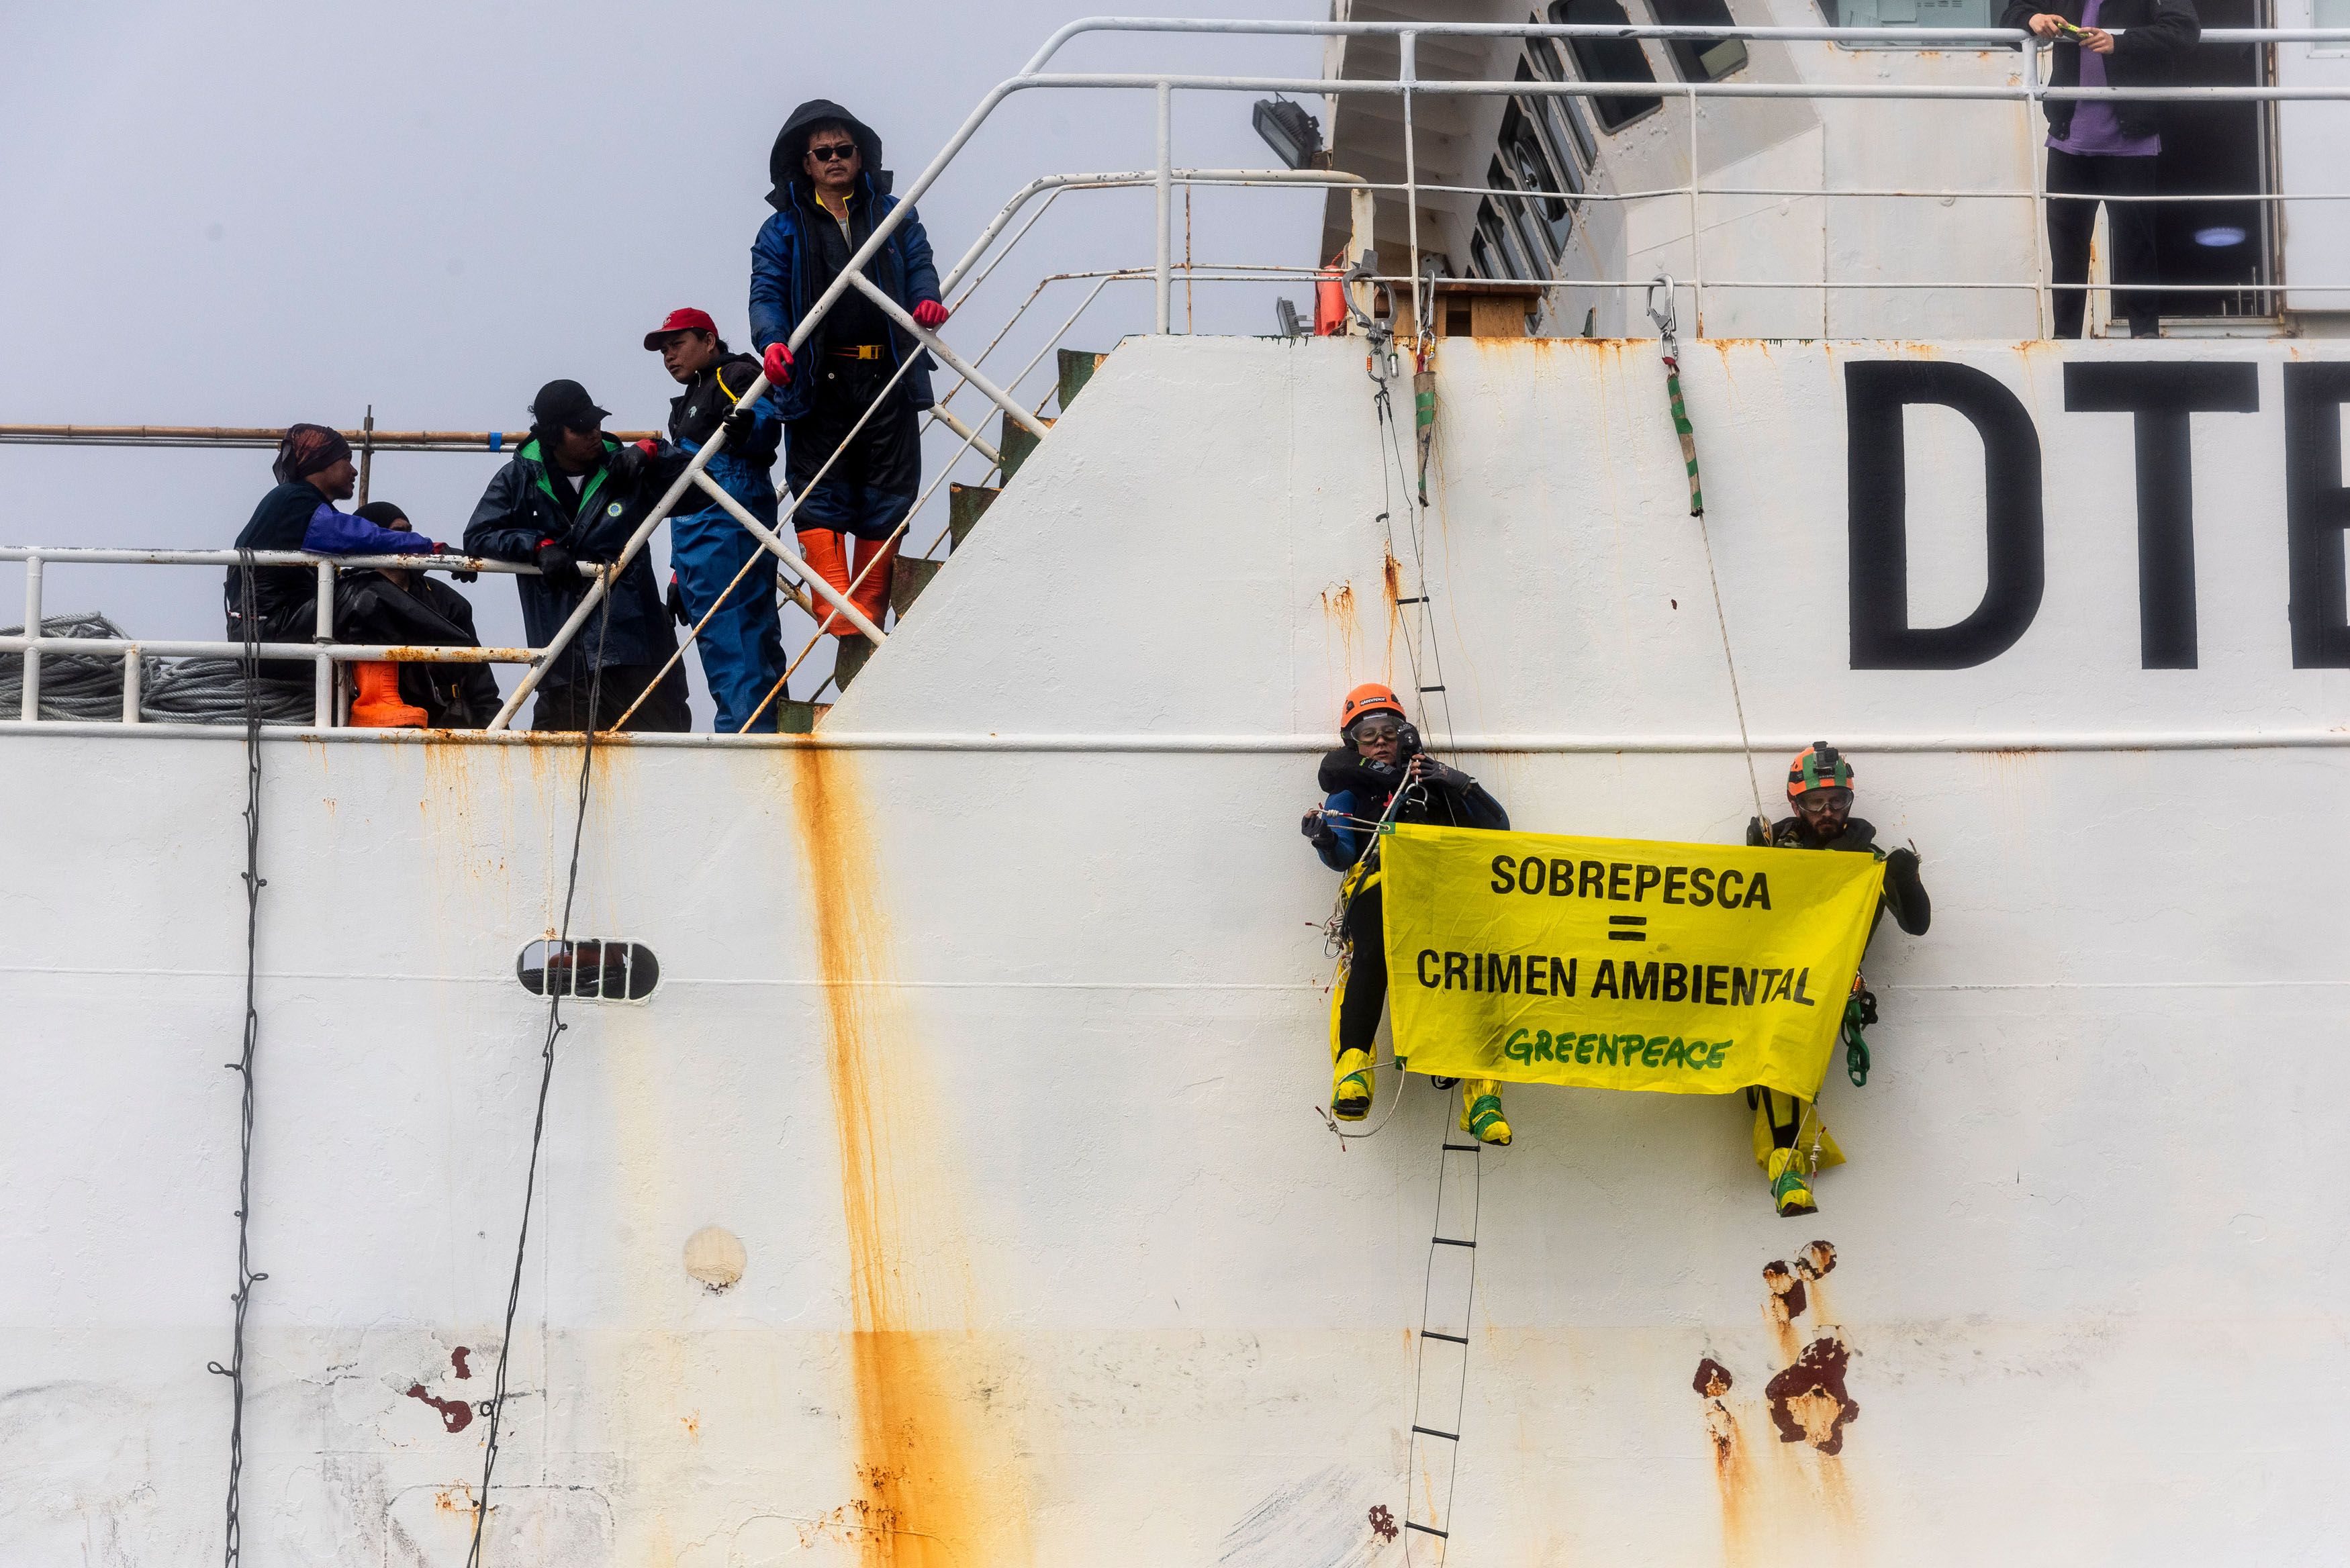 Bruno Castro y Agostina Bosch con el mensaje de Greenpeace al mundo: "sobrepesca = crimen ambiental". Foto: Cristobal Olivares / Greenpeace